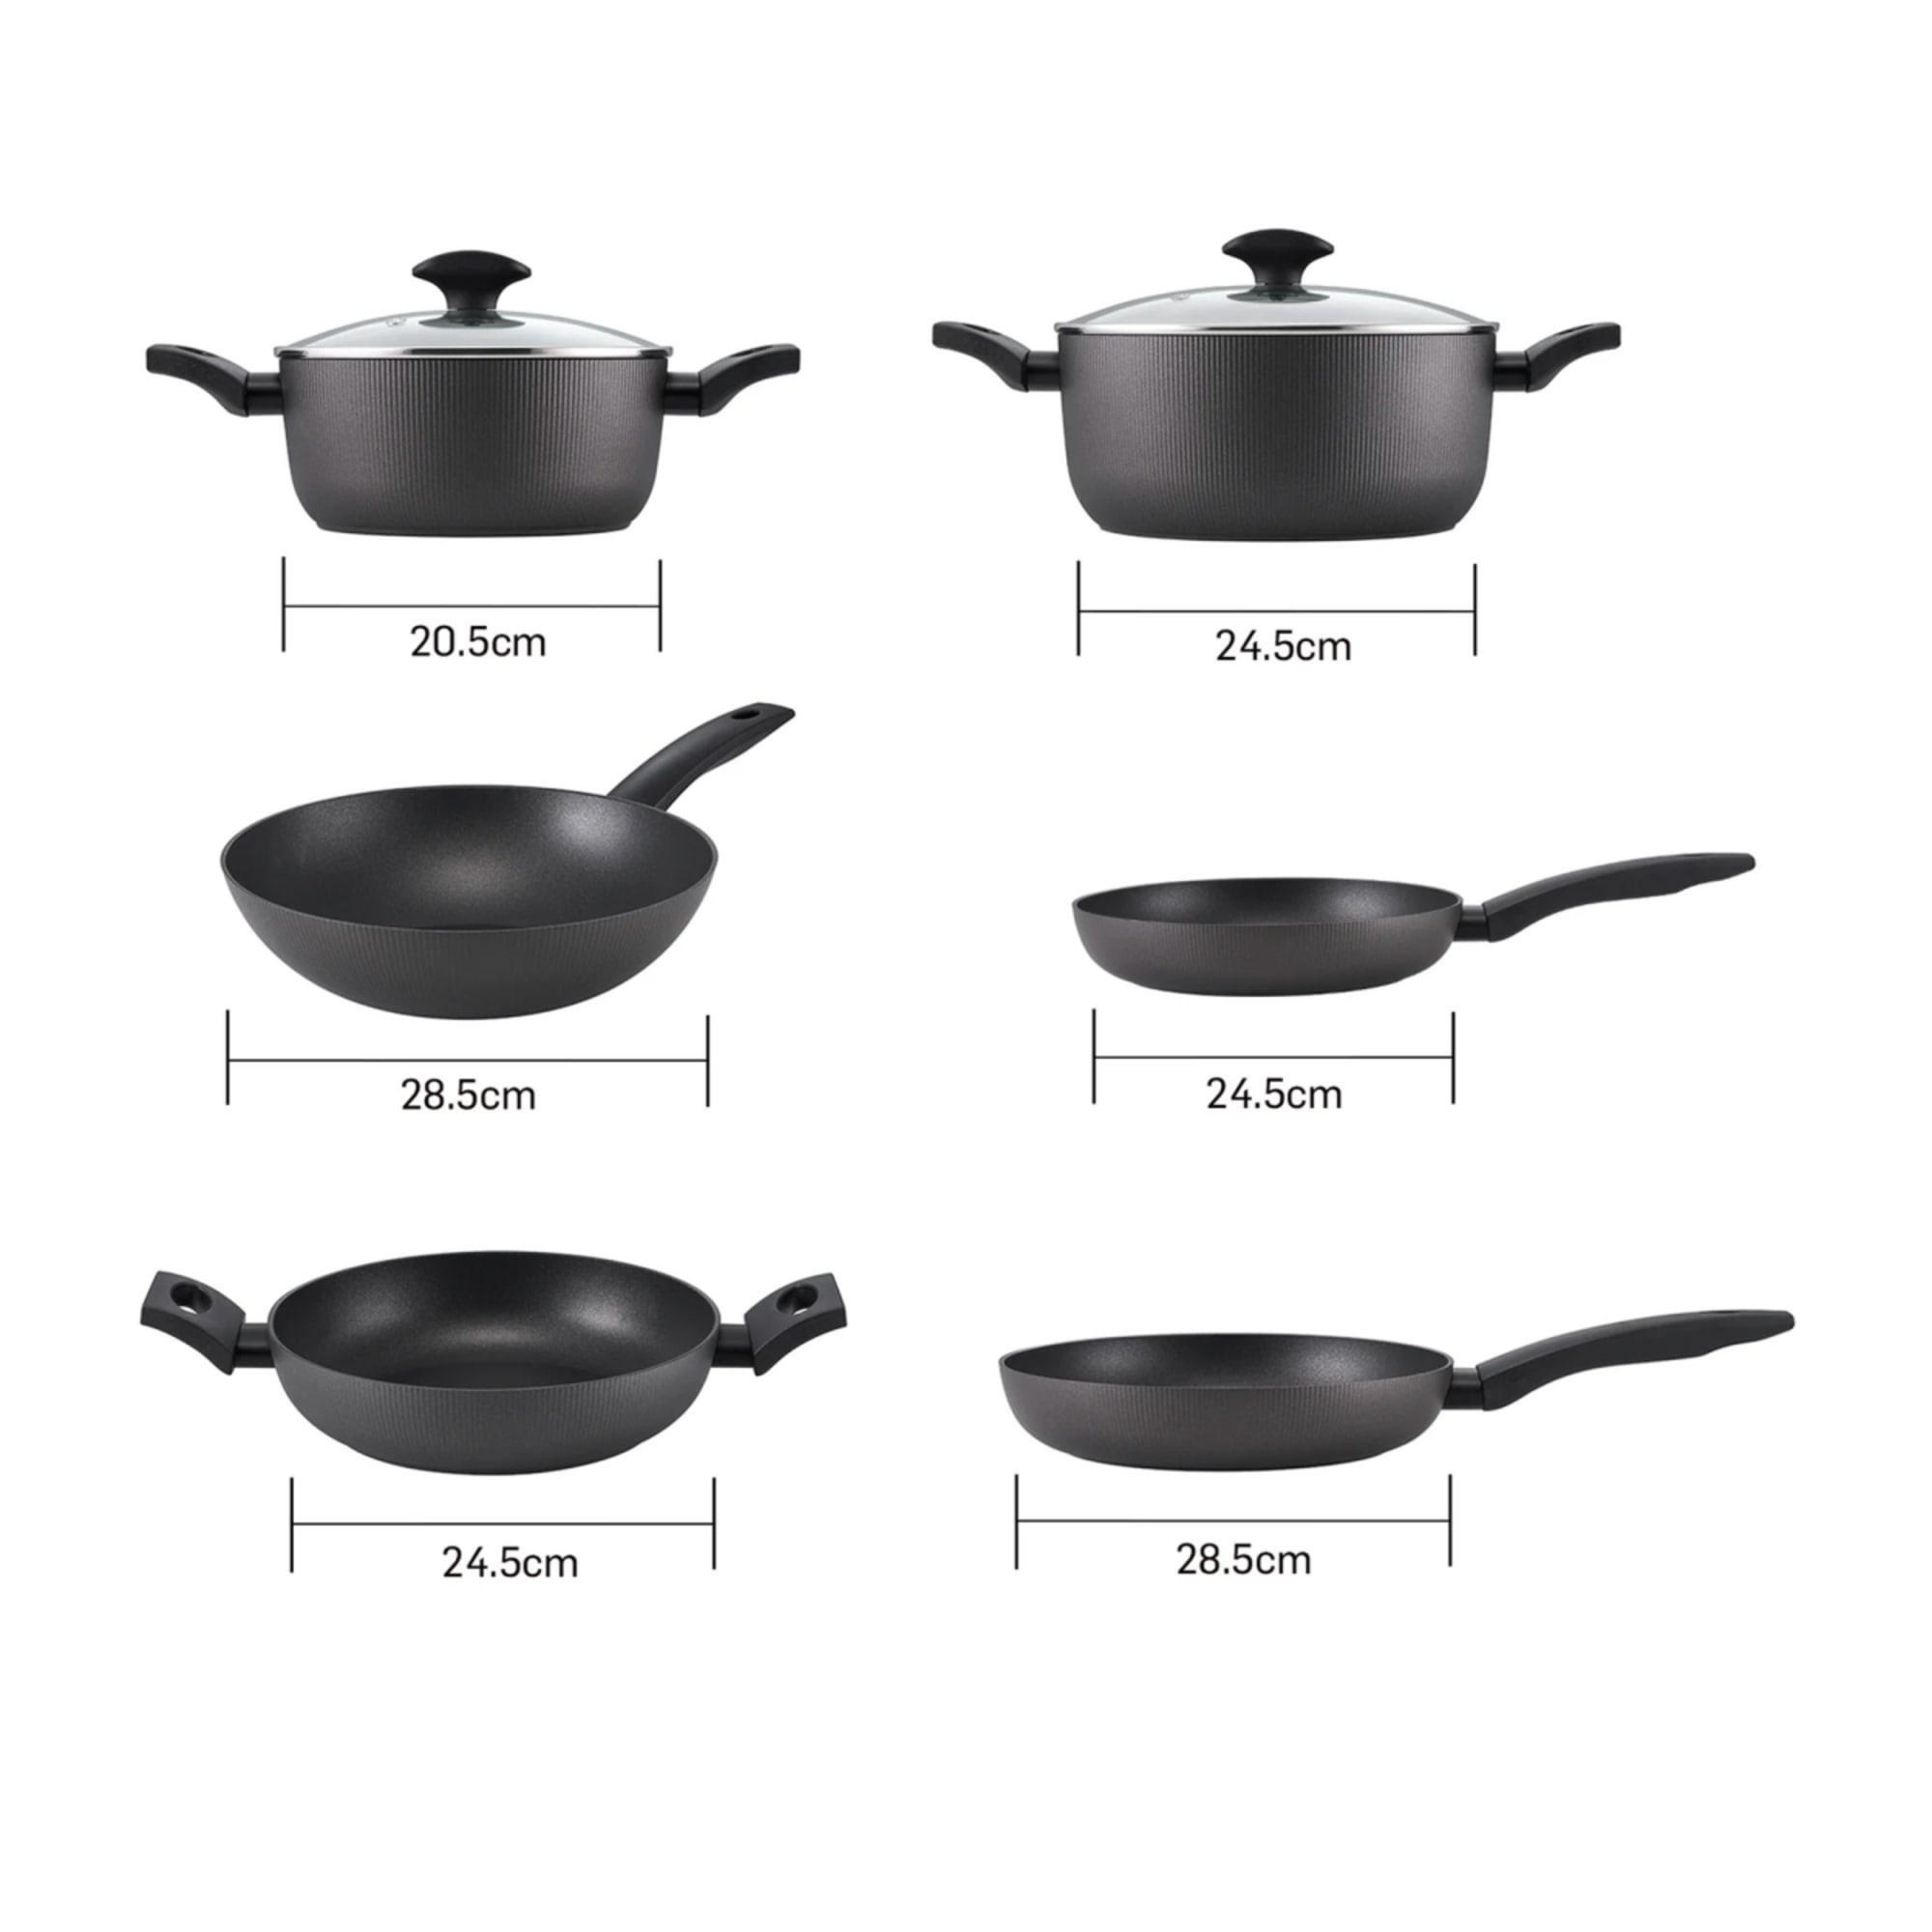 Essteele Per Forma 6pc Cookware Set Image 5